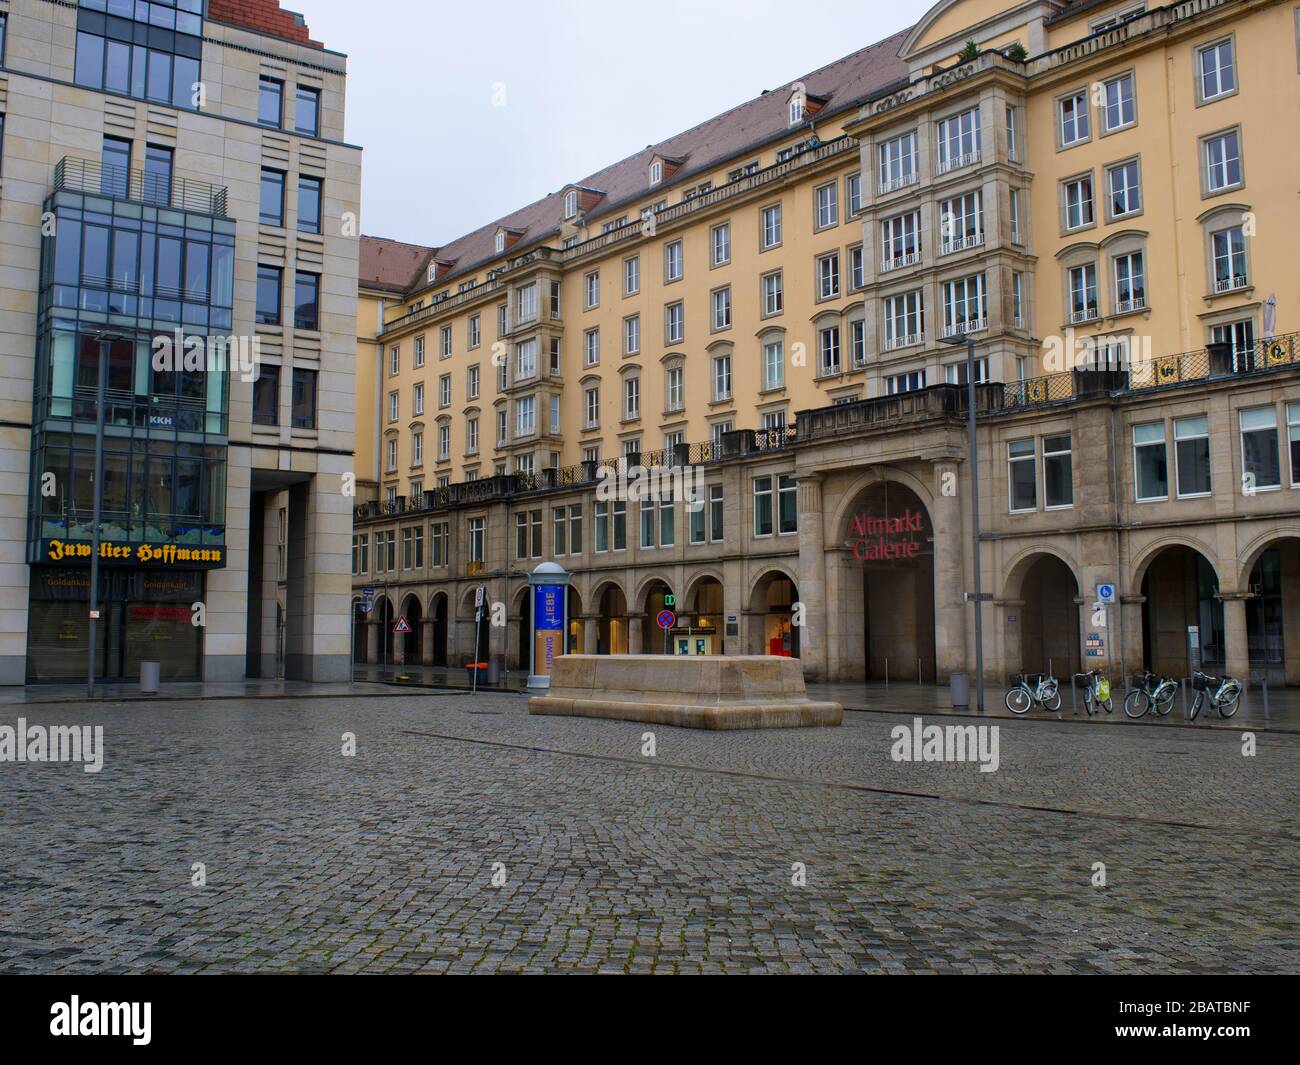 Altmarkt-Galerie en Dresden während Coronavirus Lockdown 2020 COVID-19 Ausgangssperre Regenwetter Regen Foto de stock